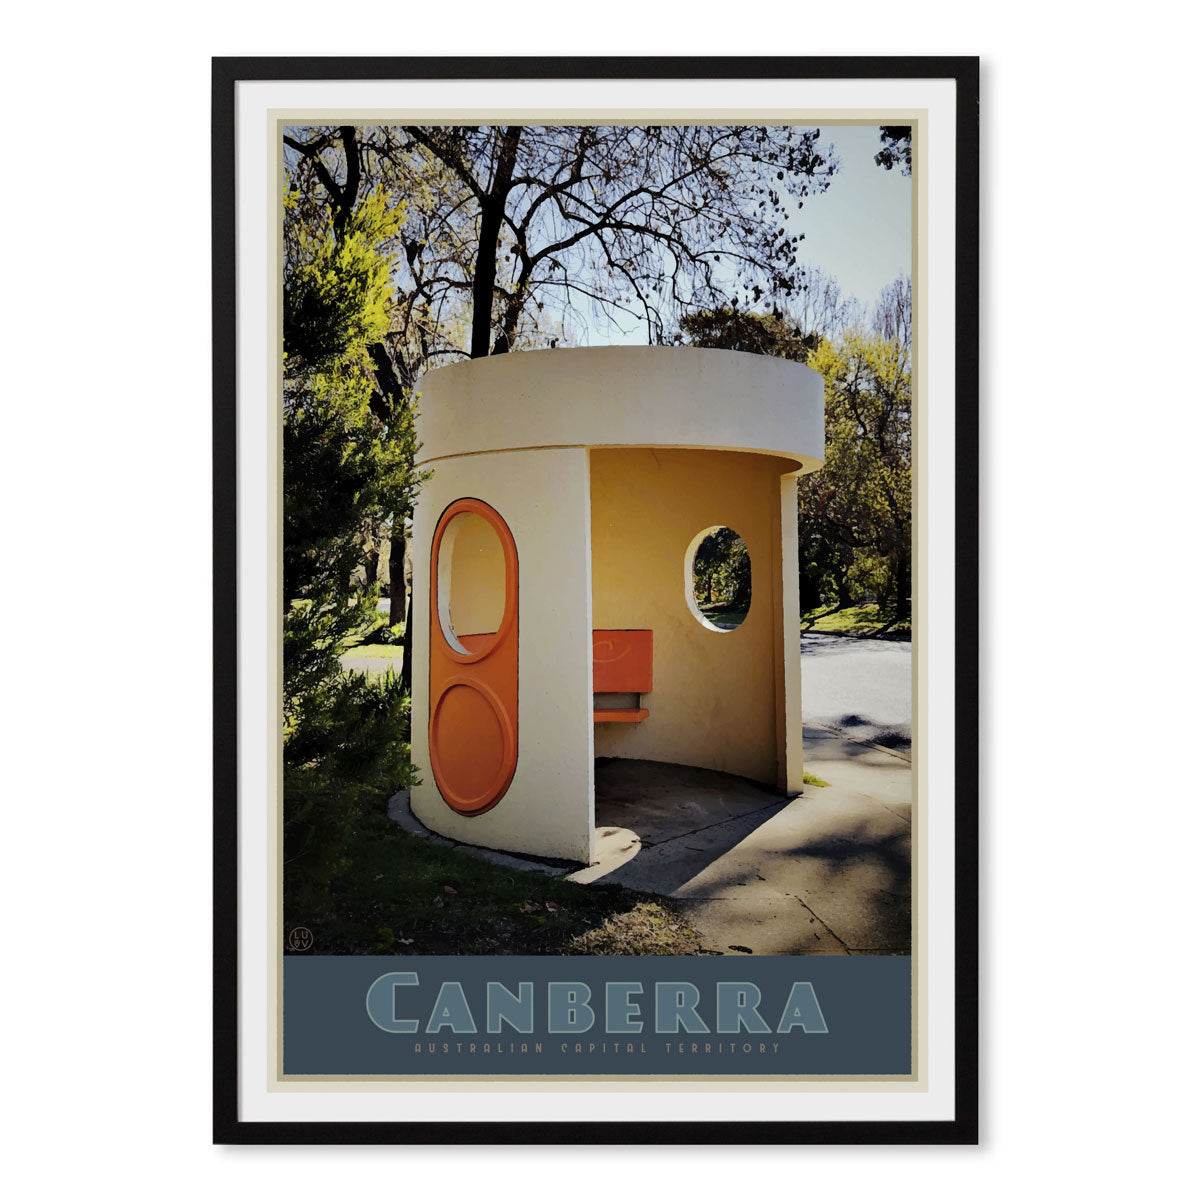 Canberra busstop black framed vintage travel poster. Original design by Places we luv